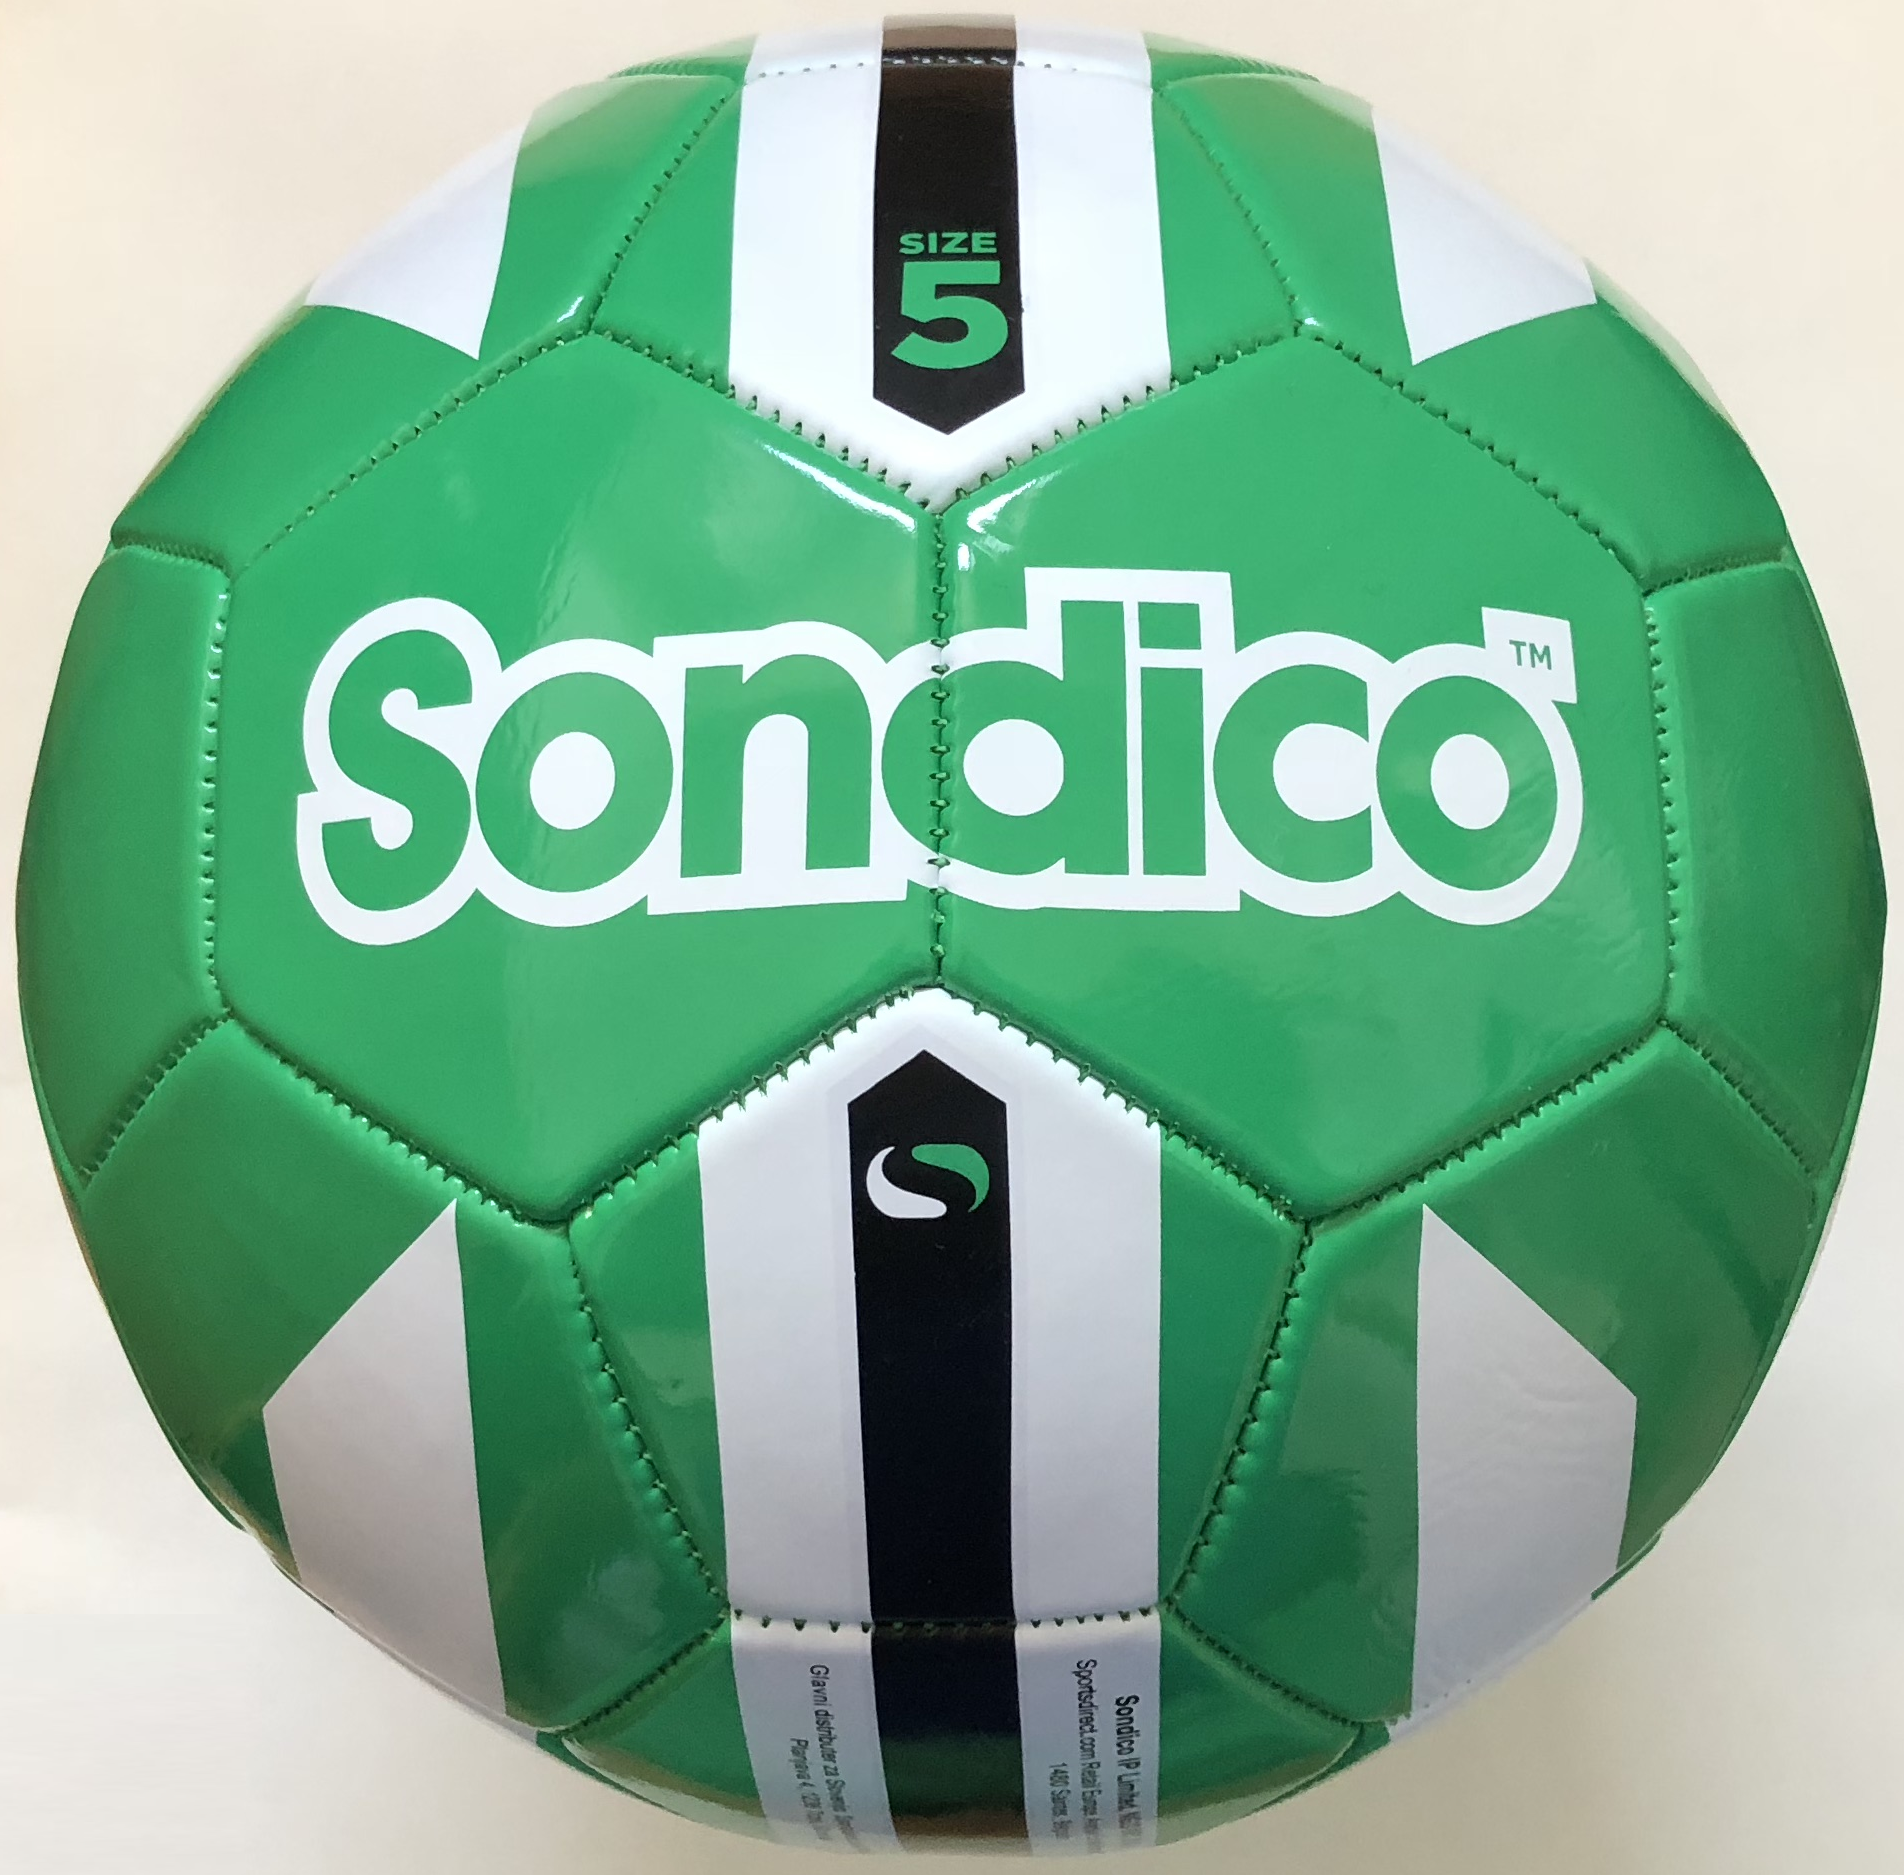 fotbalový míč, kopačák SONDICO, velikost 5, barva zelená/bílá/černá